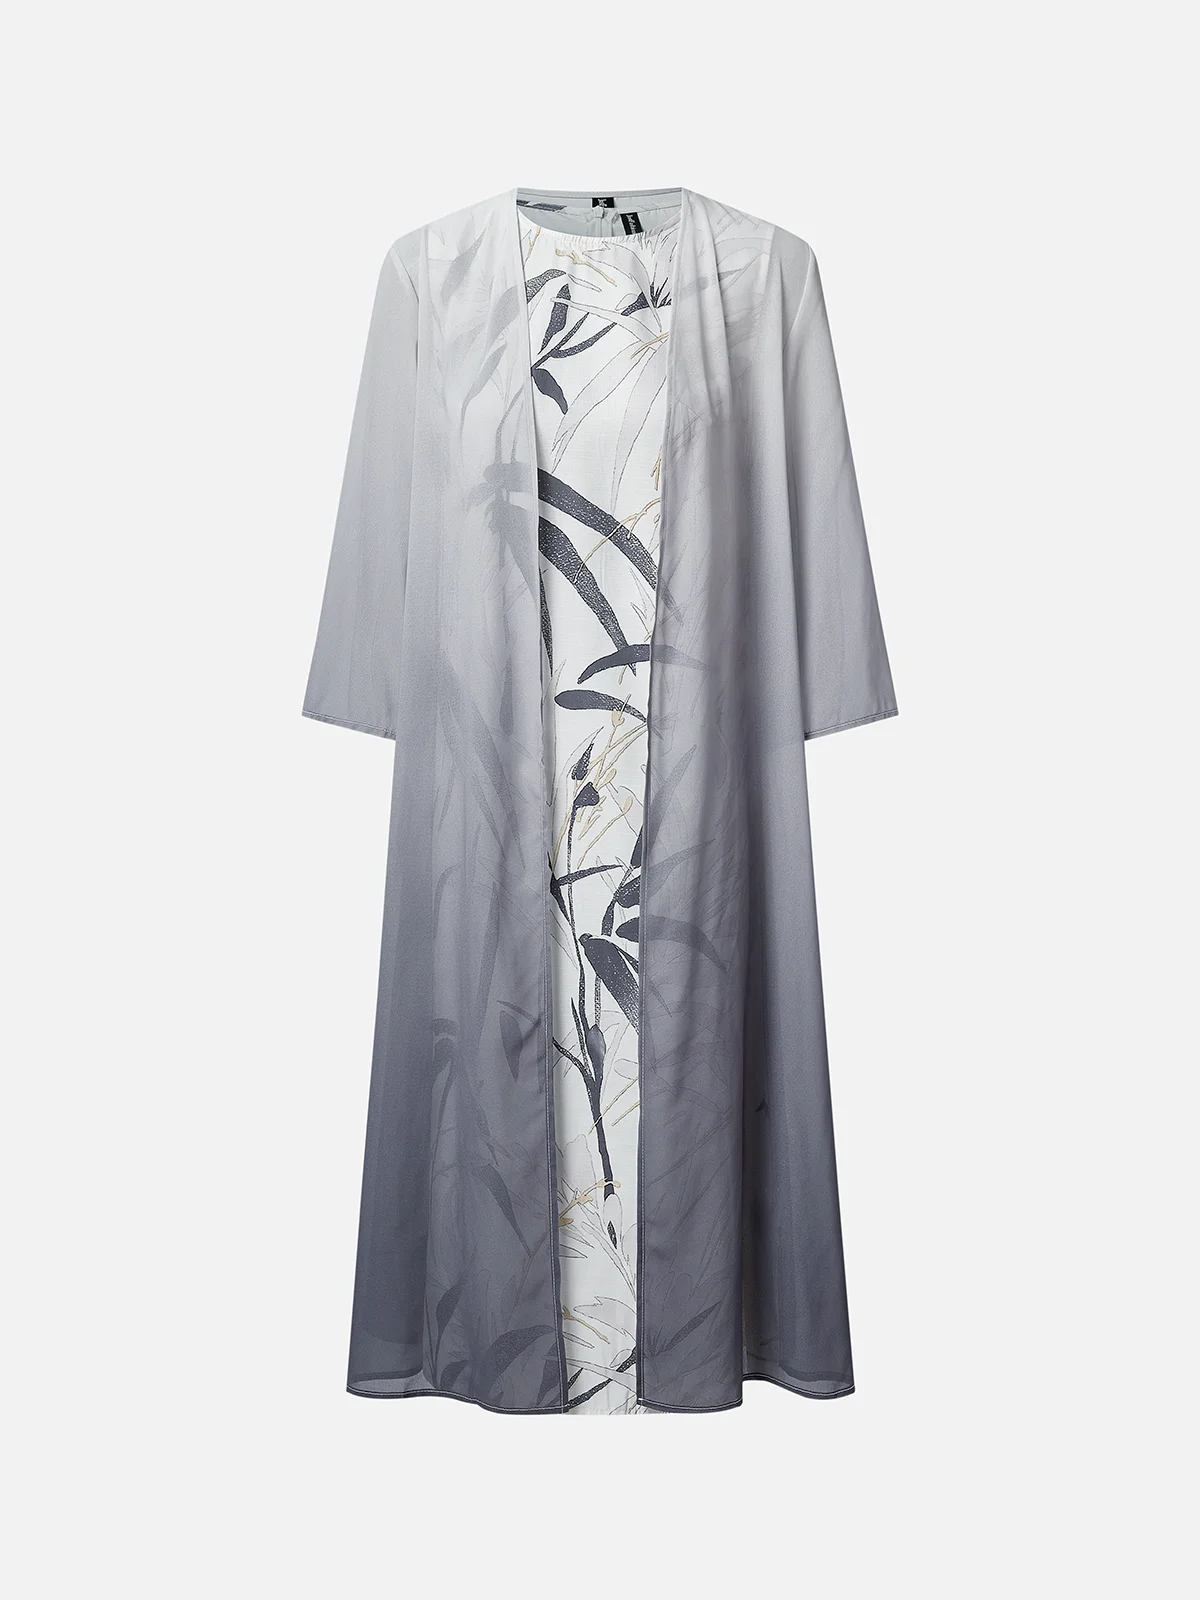 Damen Abendkleid Mantel mit Rock H-Linie Zweiteiliges Sets Rundhals Geblümt Lässig Weit Frühling Herbst